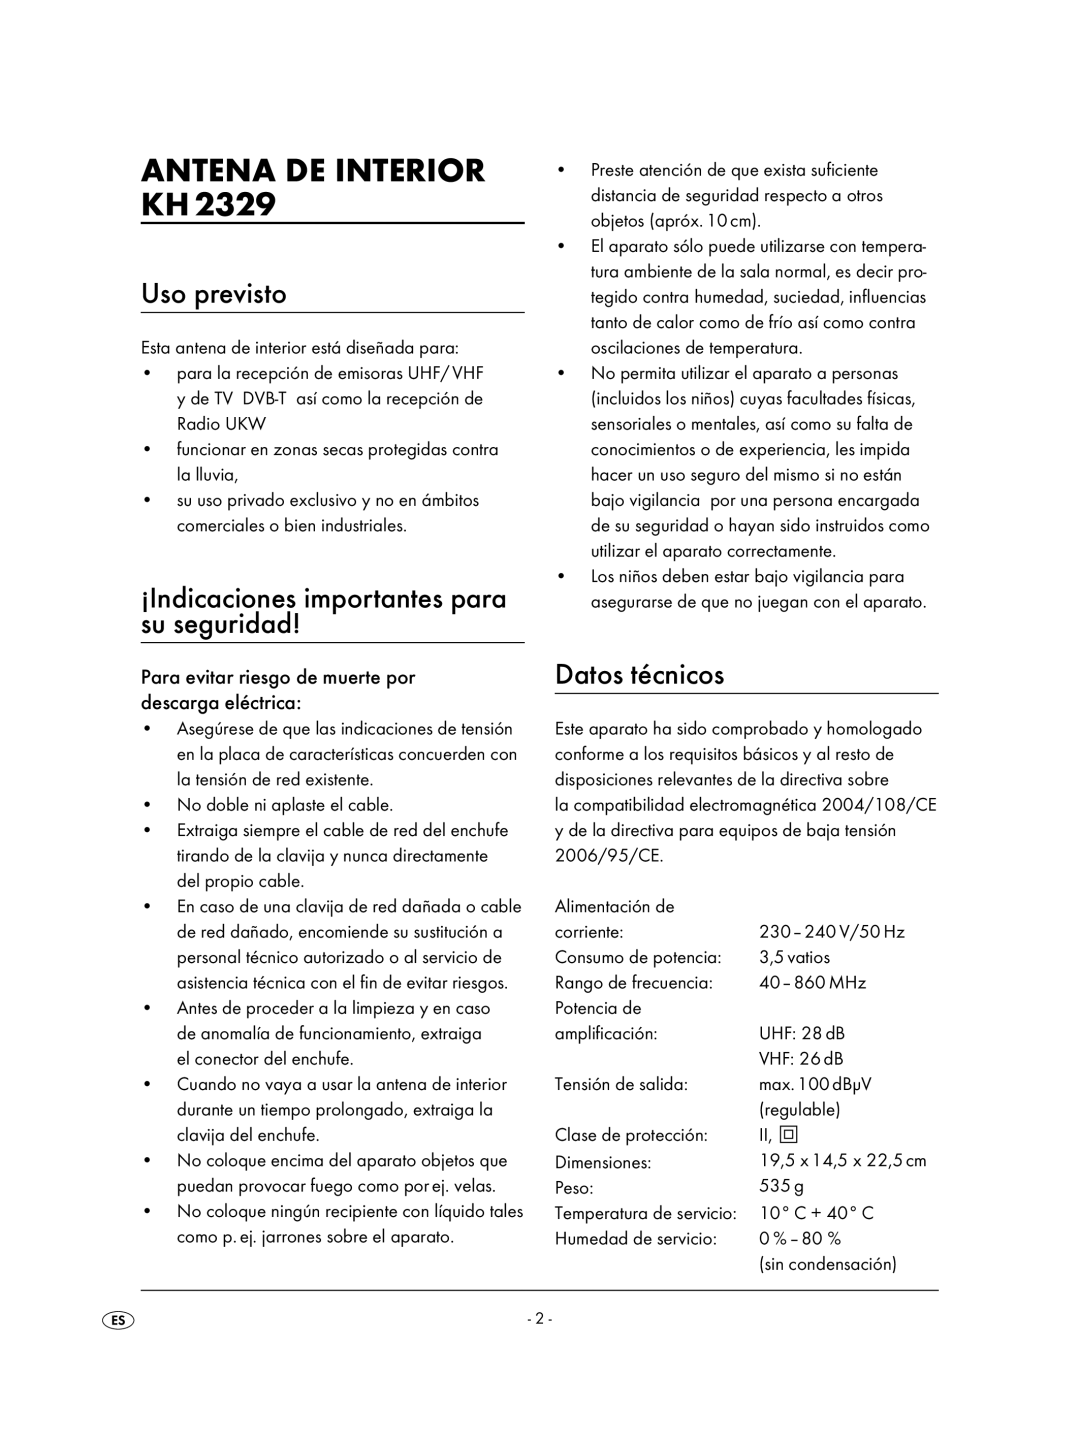 Kompernass KH 2329 manual Antena De Interior Kh, Uso previsto, ¡Indicaciones importantes para su seguridad, Datos técnicos 